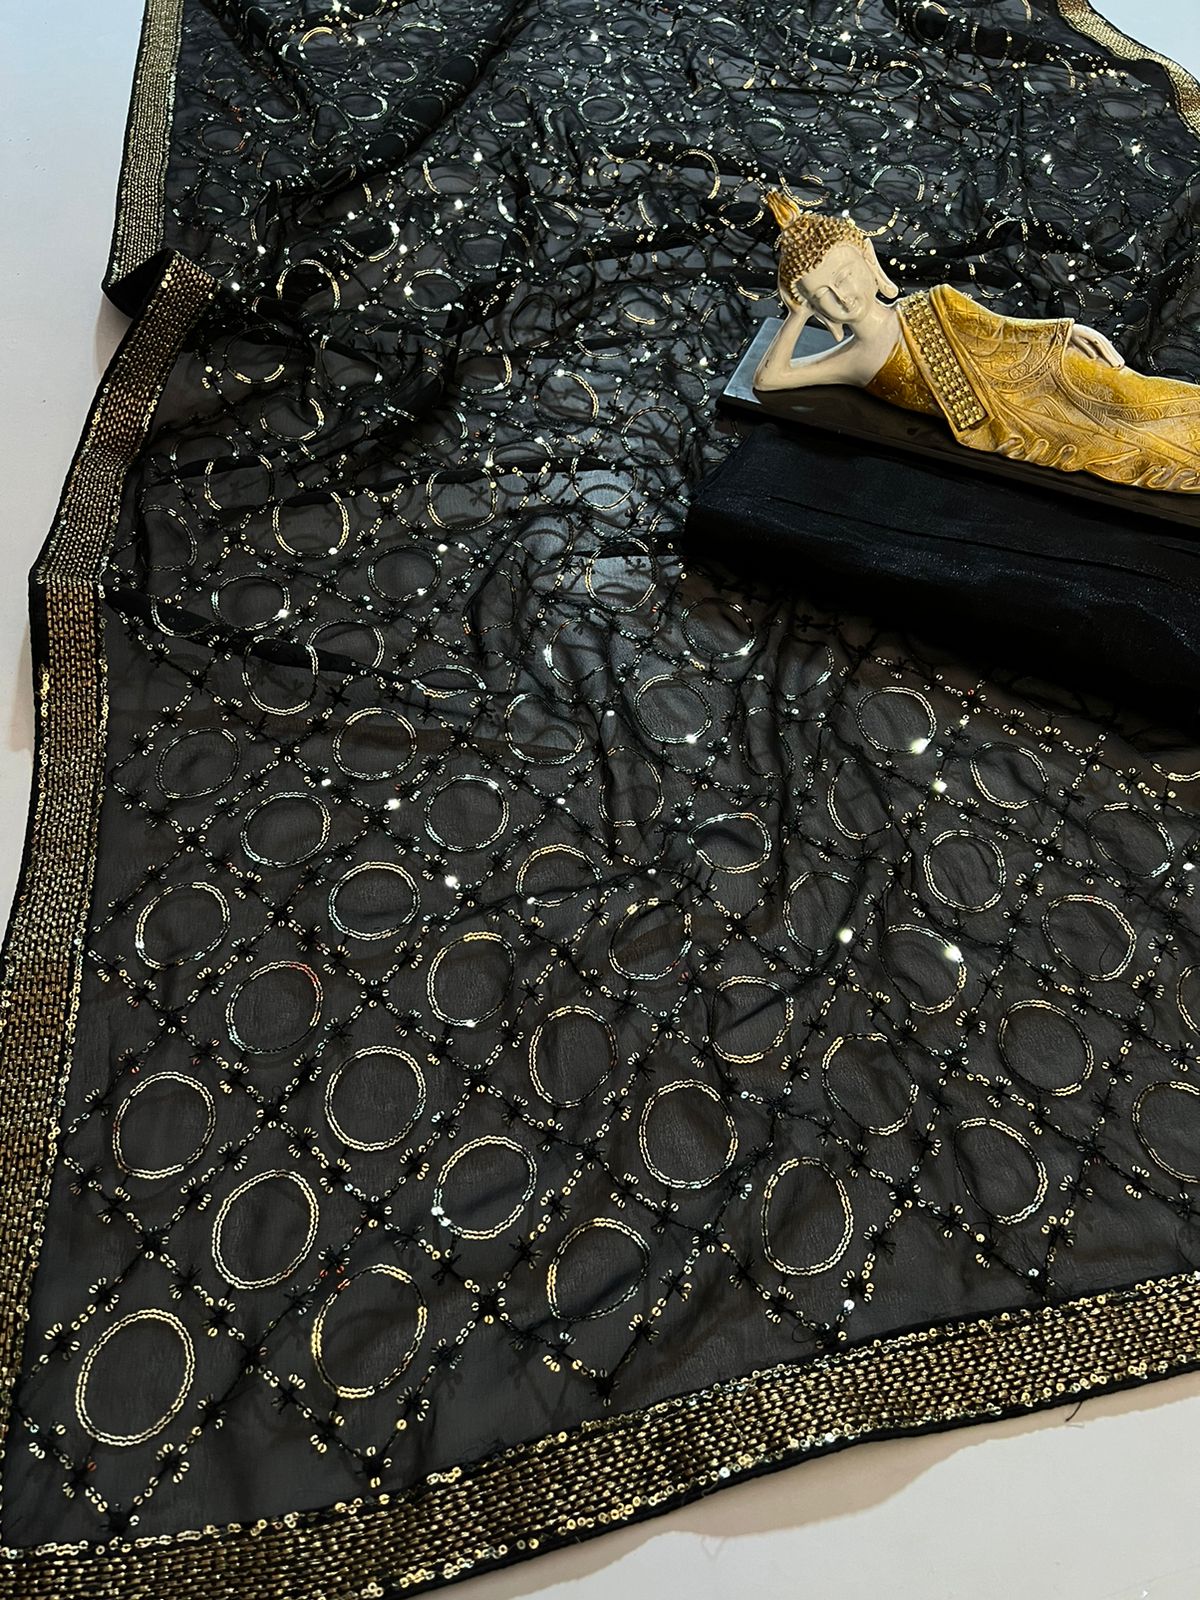 Churidar Black 4 Way Lycra Fabric Plain Comfort Lady Leggings at Rs 190 in  Surat